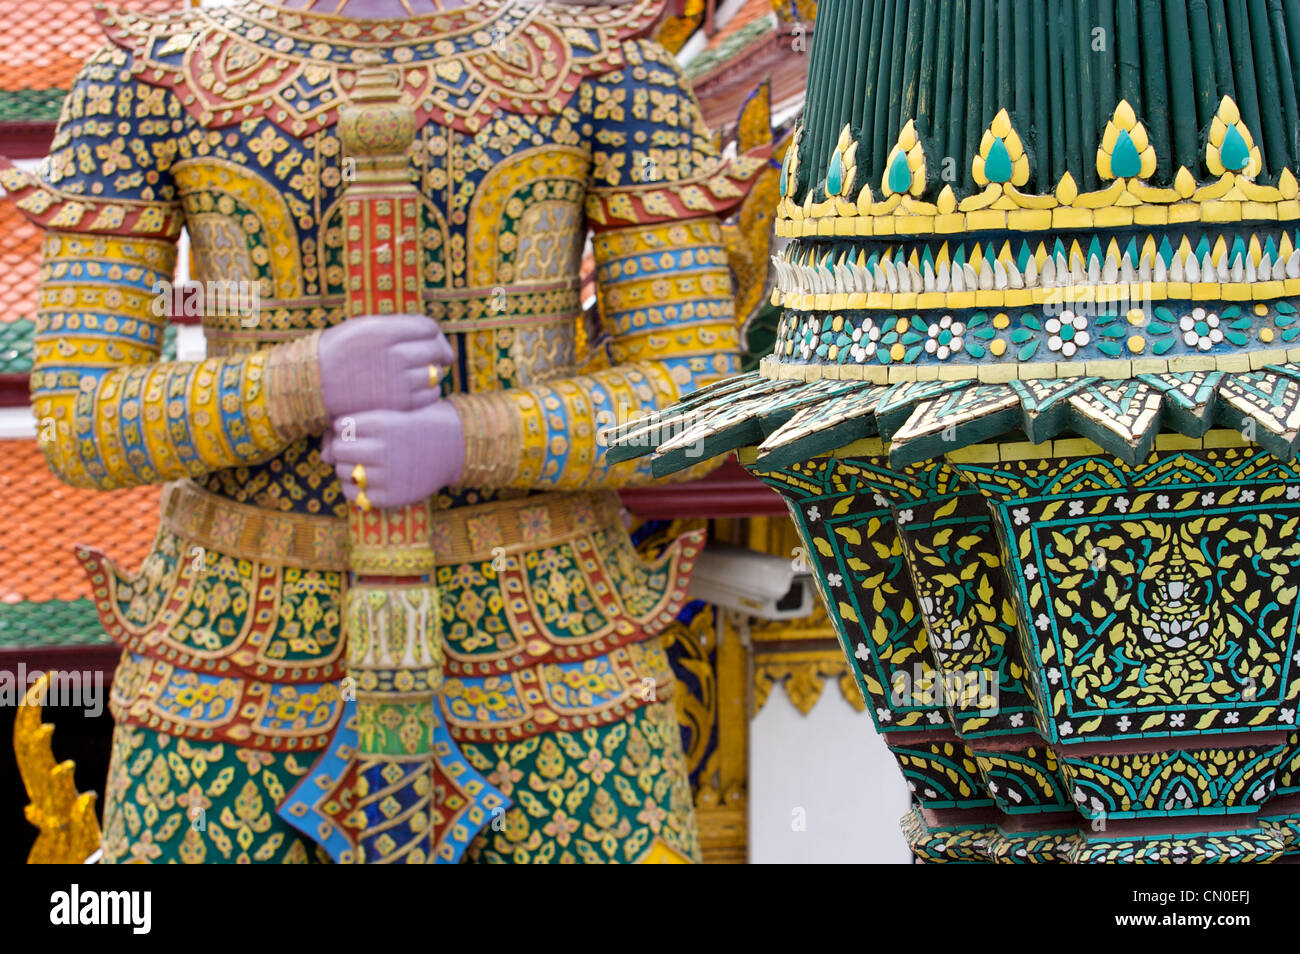 Croix géant mains, Wat Phra keaw,Grand Palace, Bangkok, Thaïlande Banque D'Images